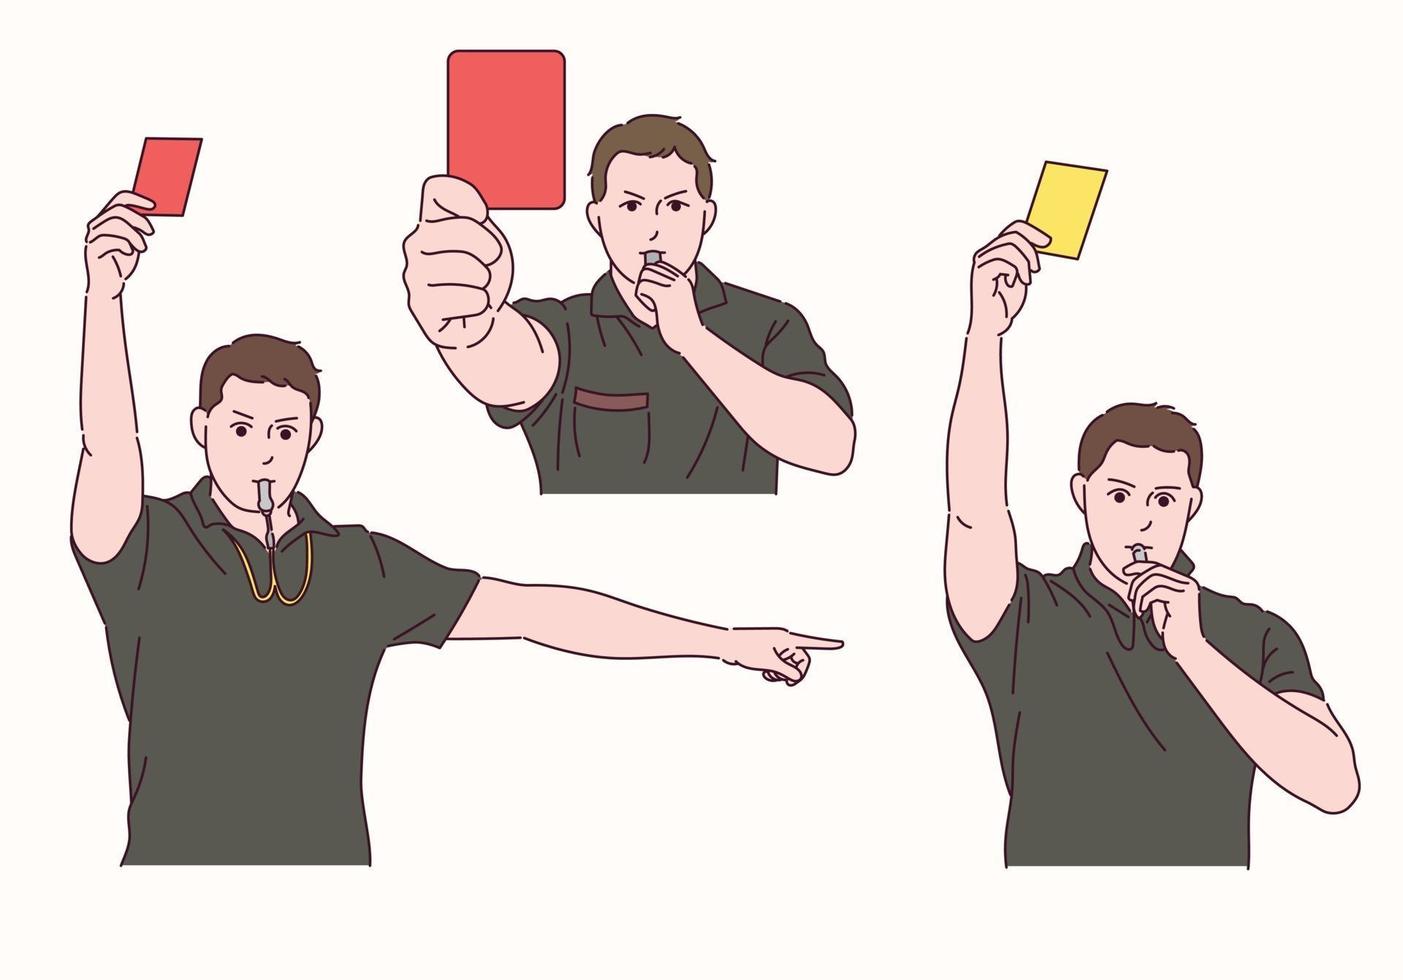 de voetbalscheidsrechter houdt een rode en gele kaart vast en blaast op een fluitje. vector